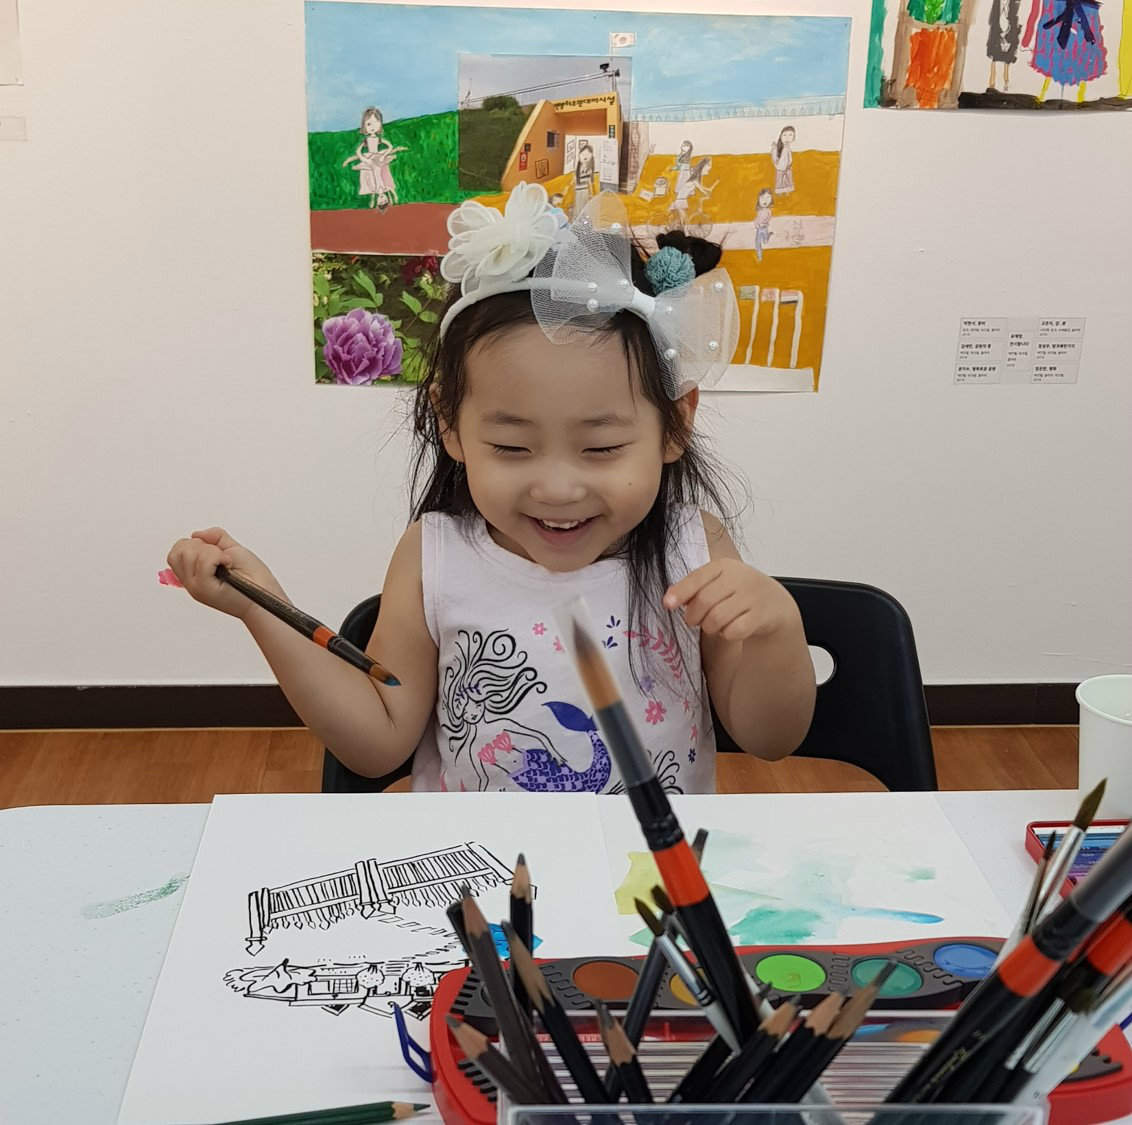 그림을 그리며 행복해 하는 어린이